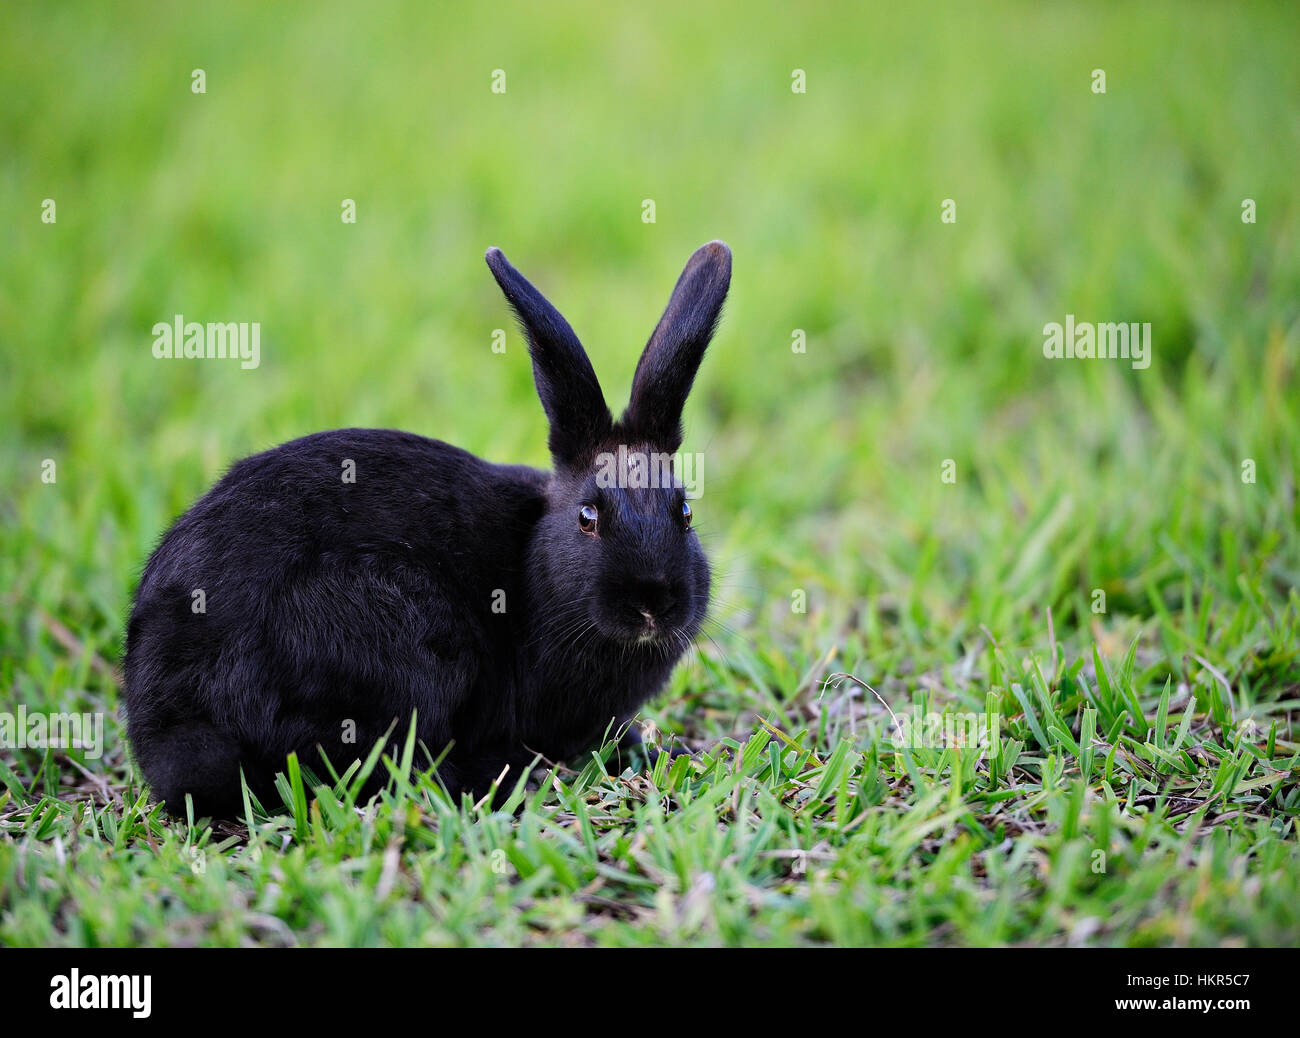 Photo de stock Le lapin noir sur l'herbe verte 2357973633